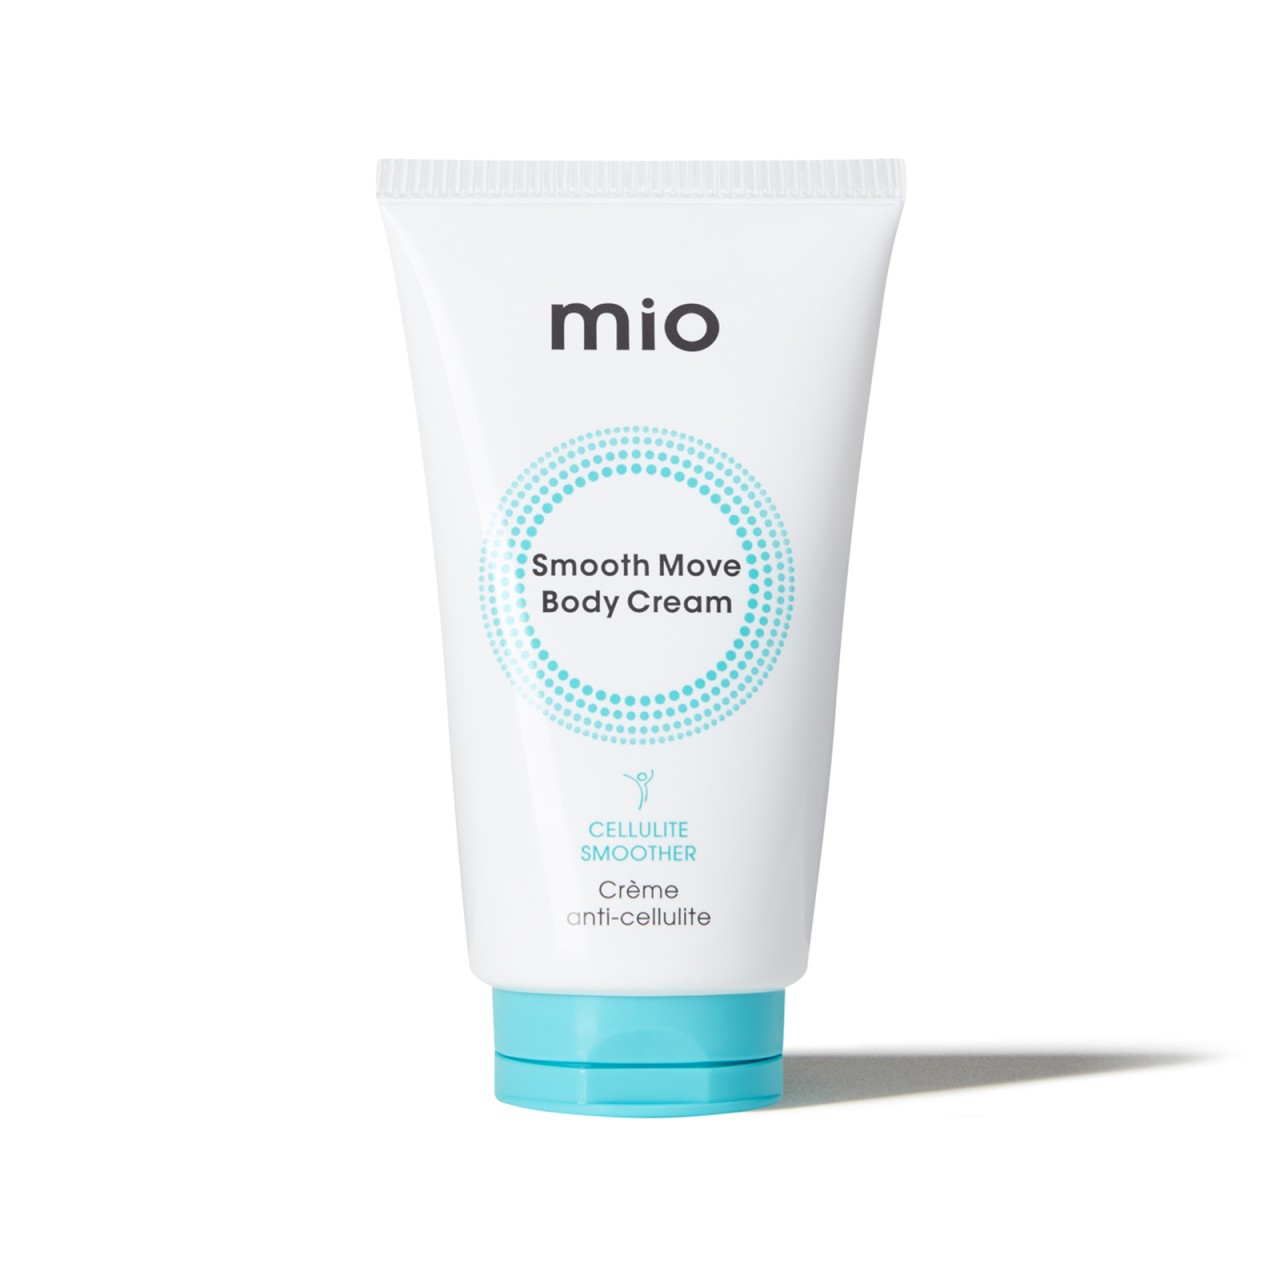 Mio - Smooth Move Body Cream - 